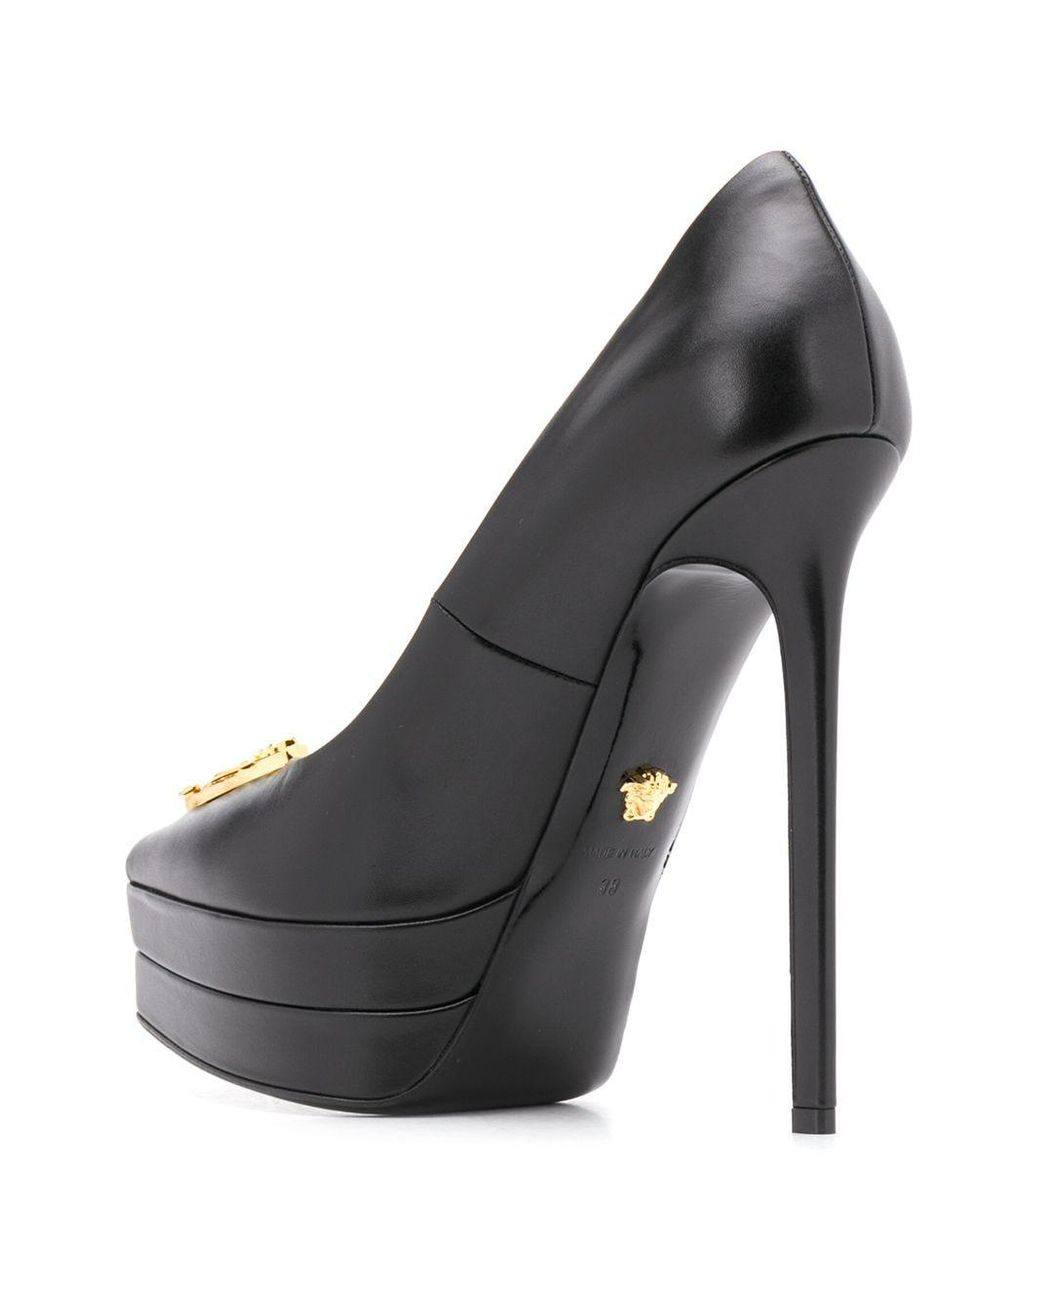 Cuñas De Piel Con Plataforma 160mm Versace de Cuero de color Negro Mujer Zapatos de Tacones de Cuñas y zapatos de salón 